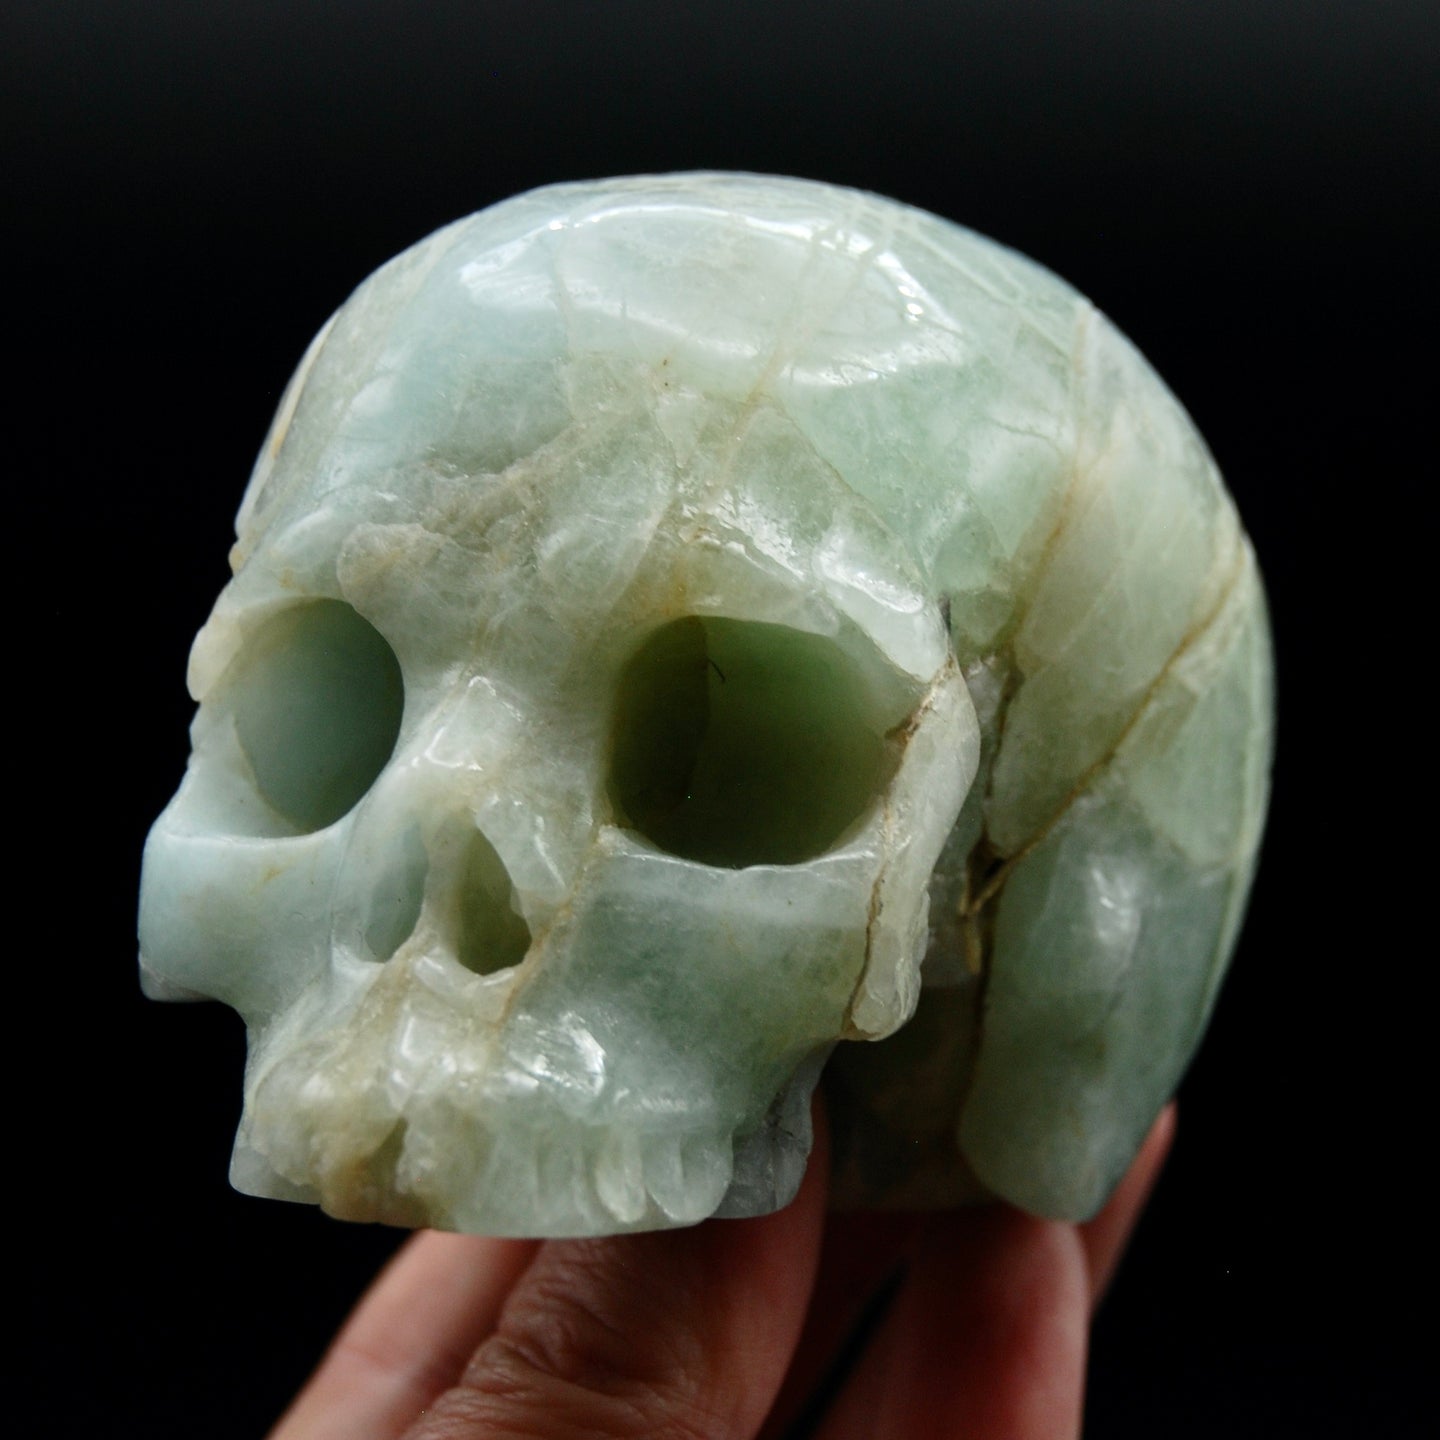 Genuine Aquamarine Carved Crystal Skull